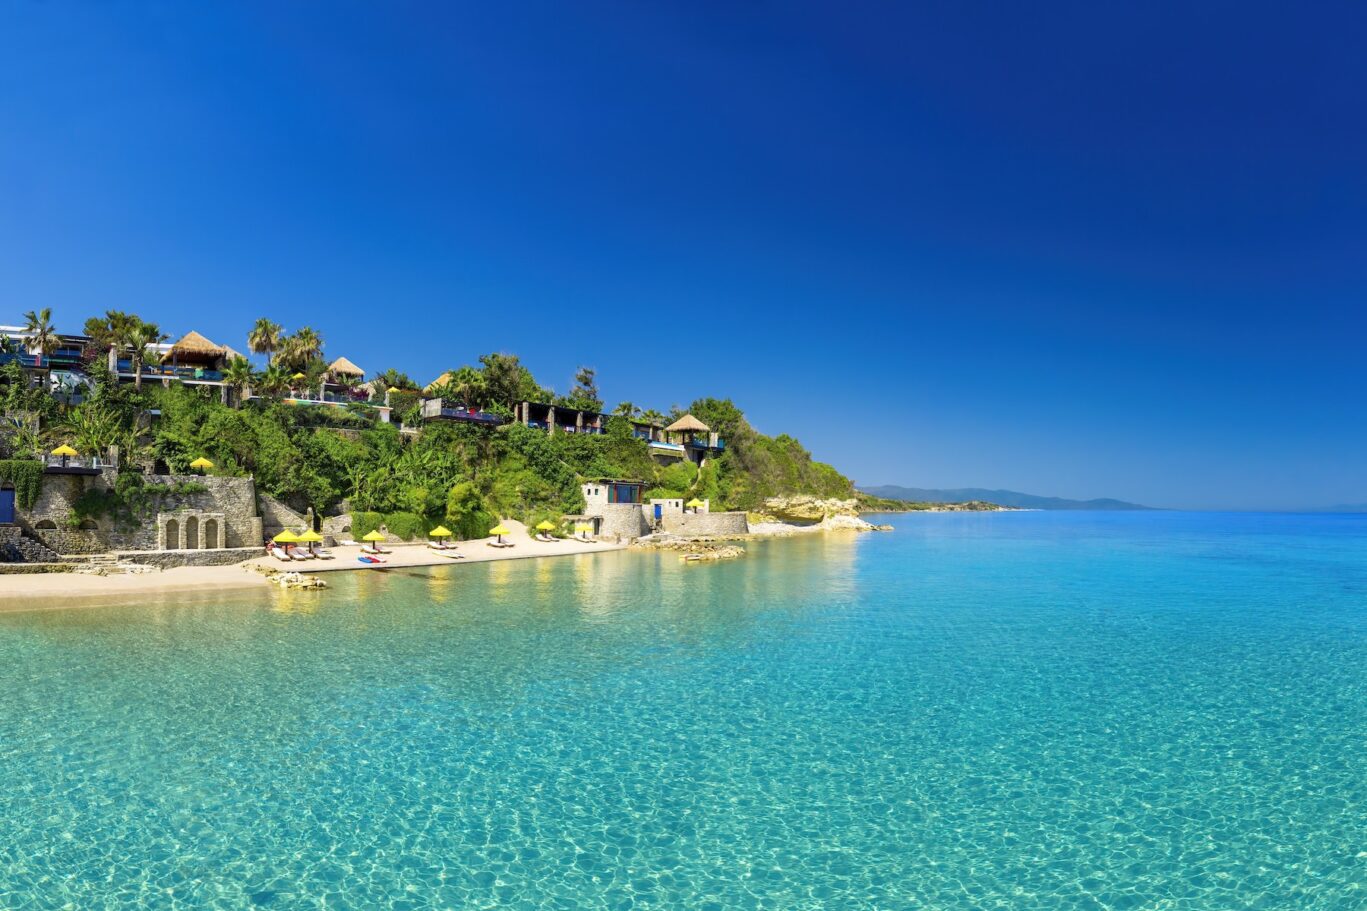 Europe’s most private resort Porto Zante Villas & Spa Greece Luxury Boutique Hotel private beach greek island